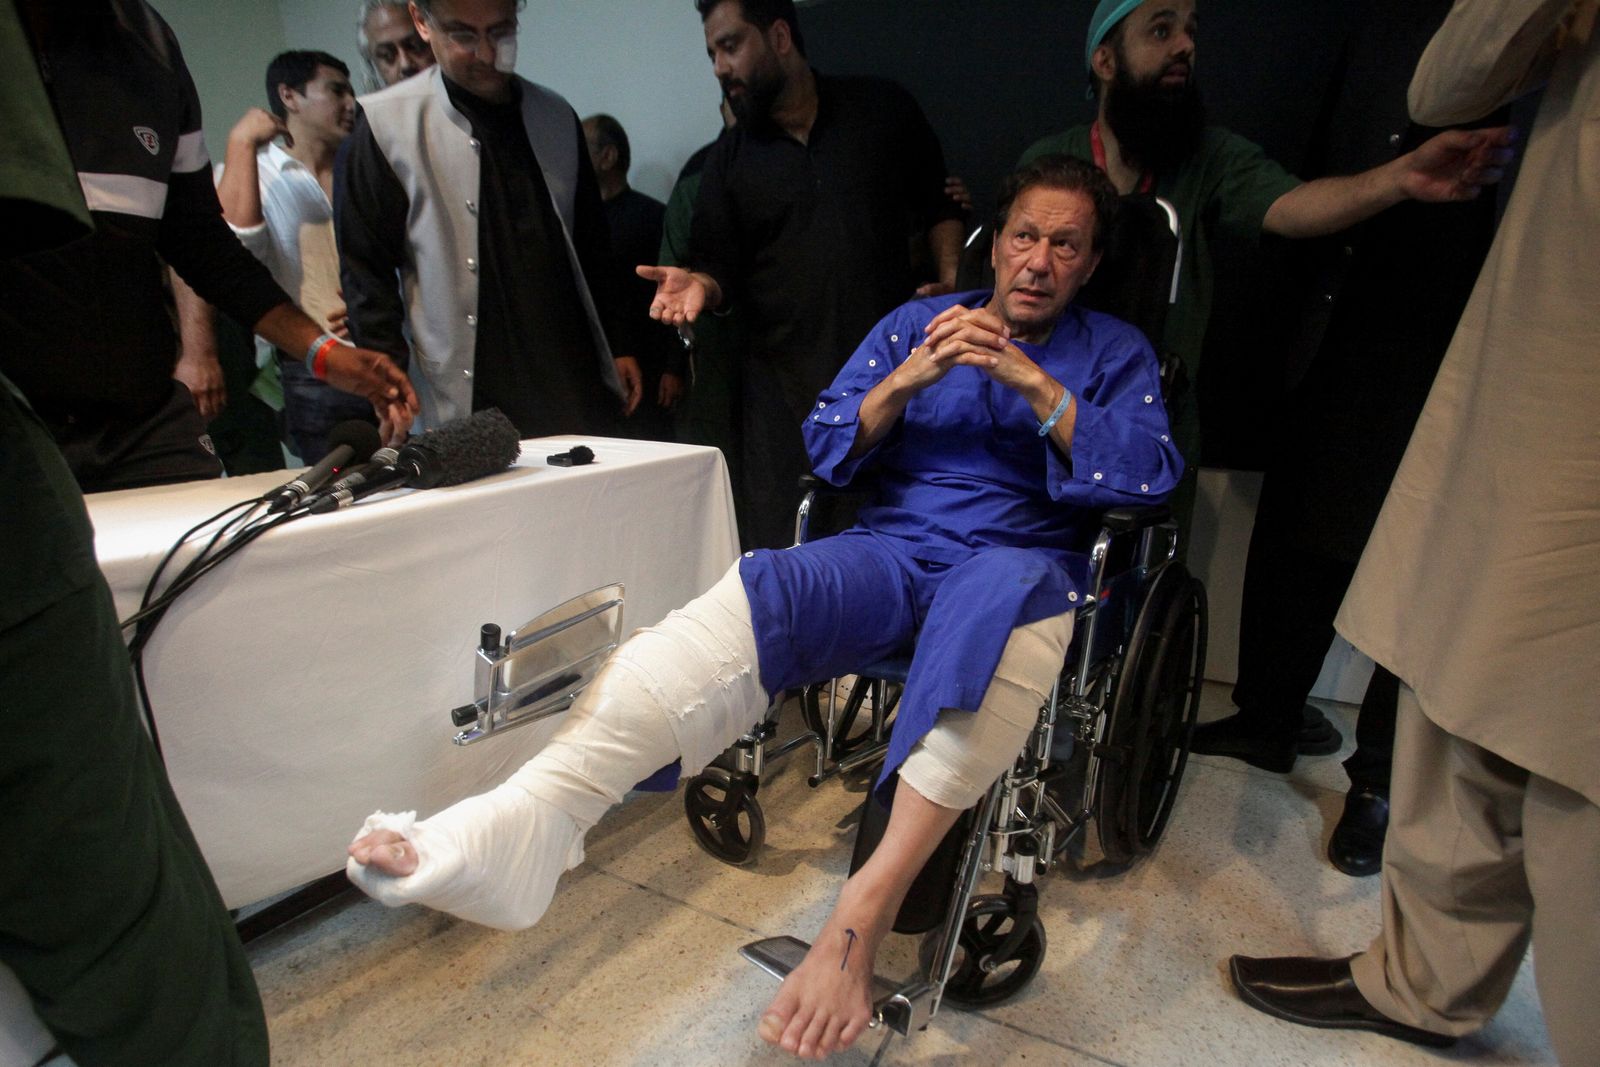 رئيس الوزراء الباكستاني السابق عمران خان يجلس على كرسي متحرك، بعد إصابته إثر حادث إطلاق نار خلال مسيرة طويلة في وزير أباد، في مستشفى في لاهور، باكستان. 4 نوفمبر 2022. - REUTERS